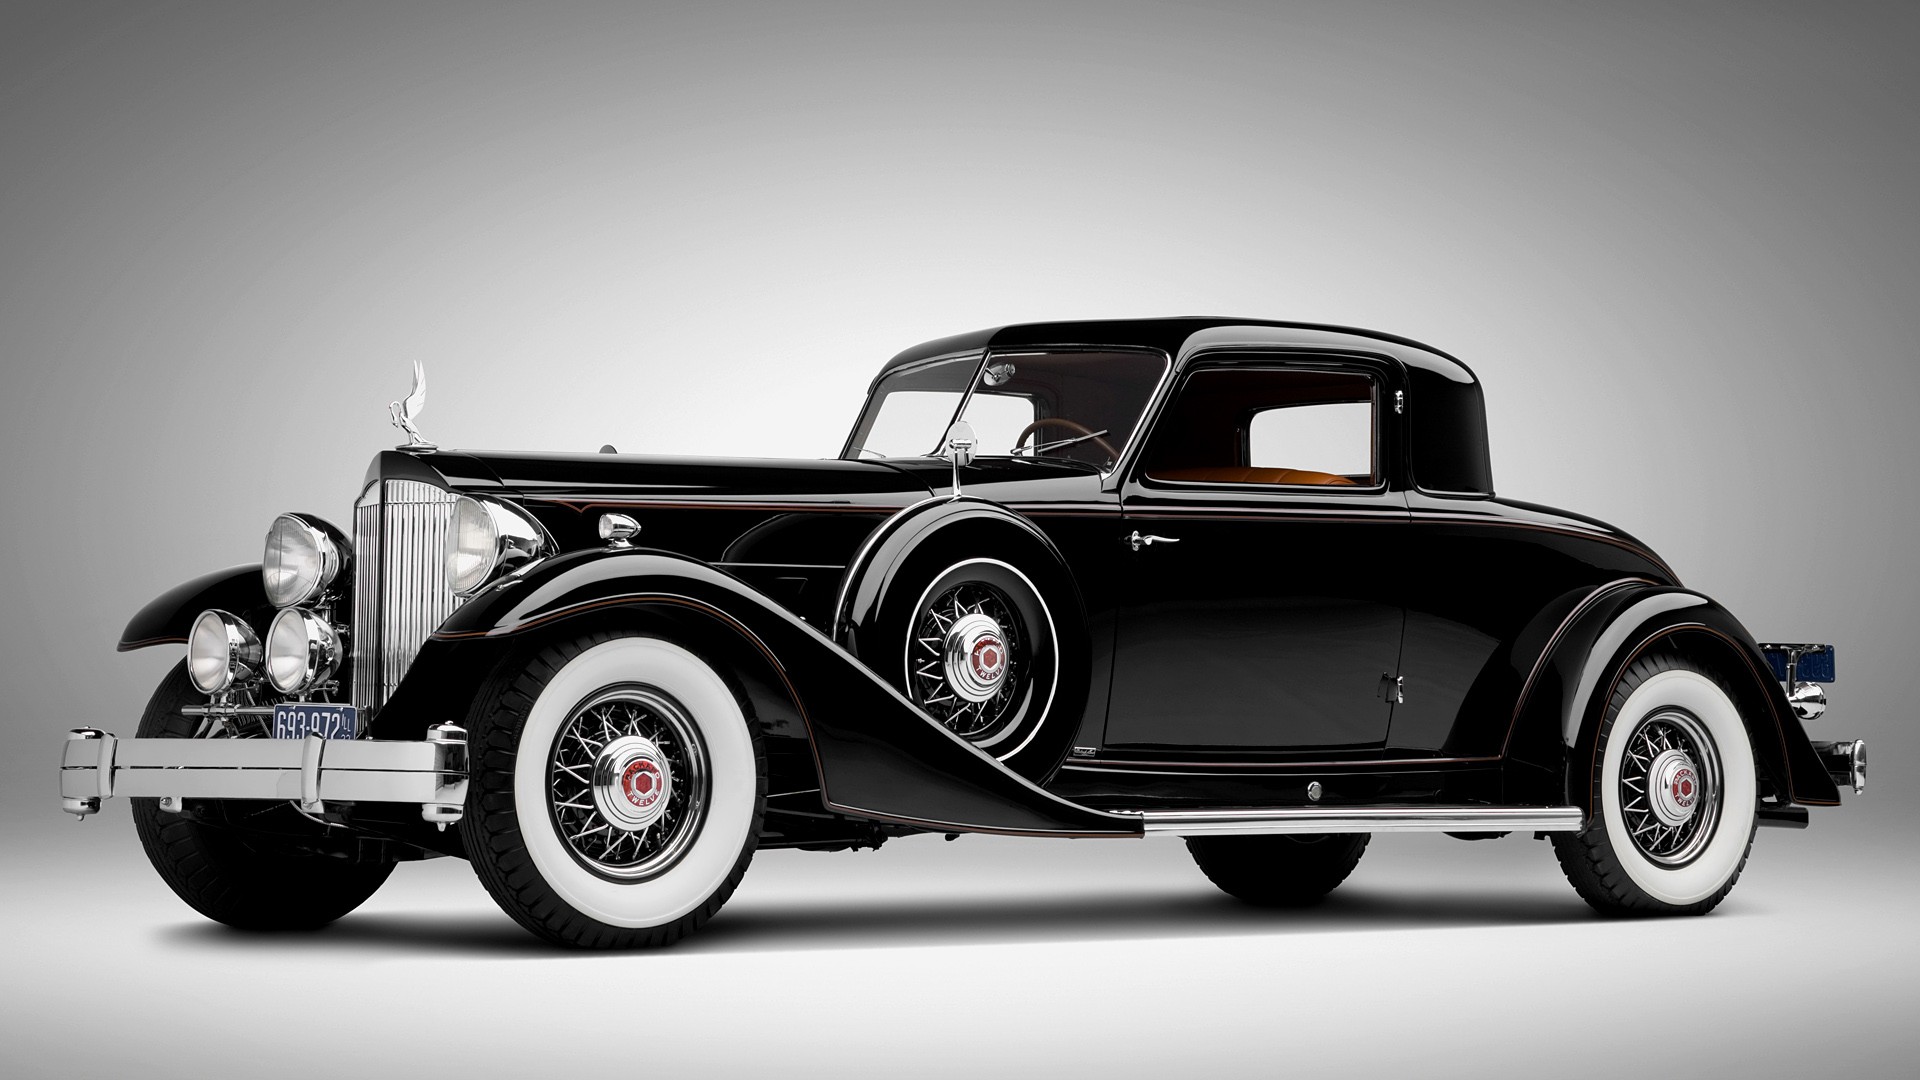 artikel yang berkategori Cars dengan judul classic cars wallpapers 1920x1080